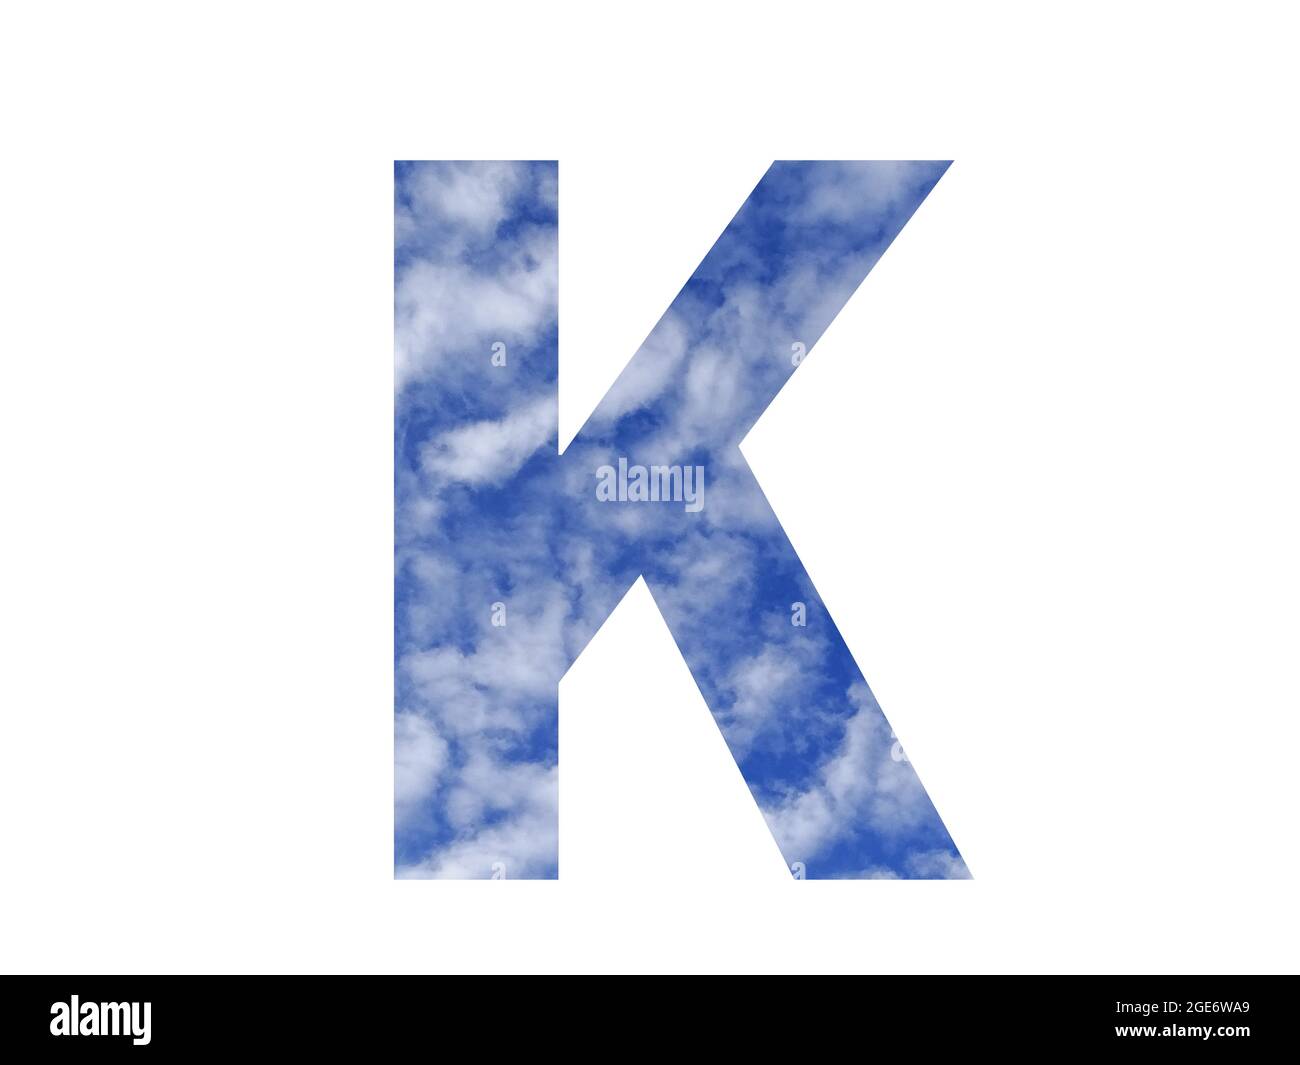 Lettera K dell'alfabeto fatta con cielo blu e nuvole bianche, isolata su sfondo bianco Foto Stock